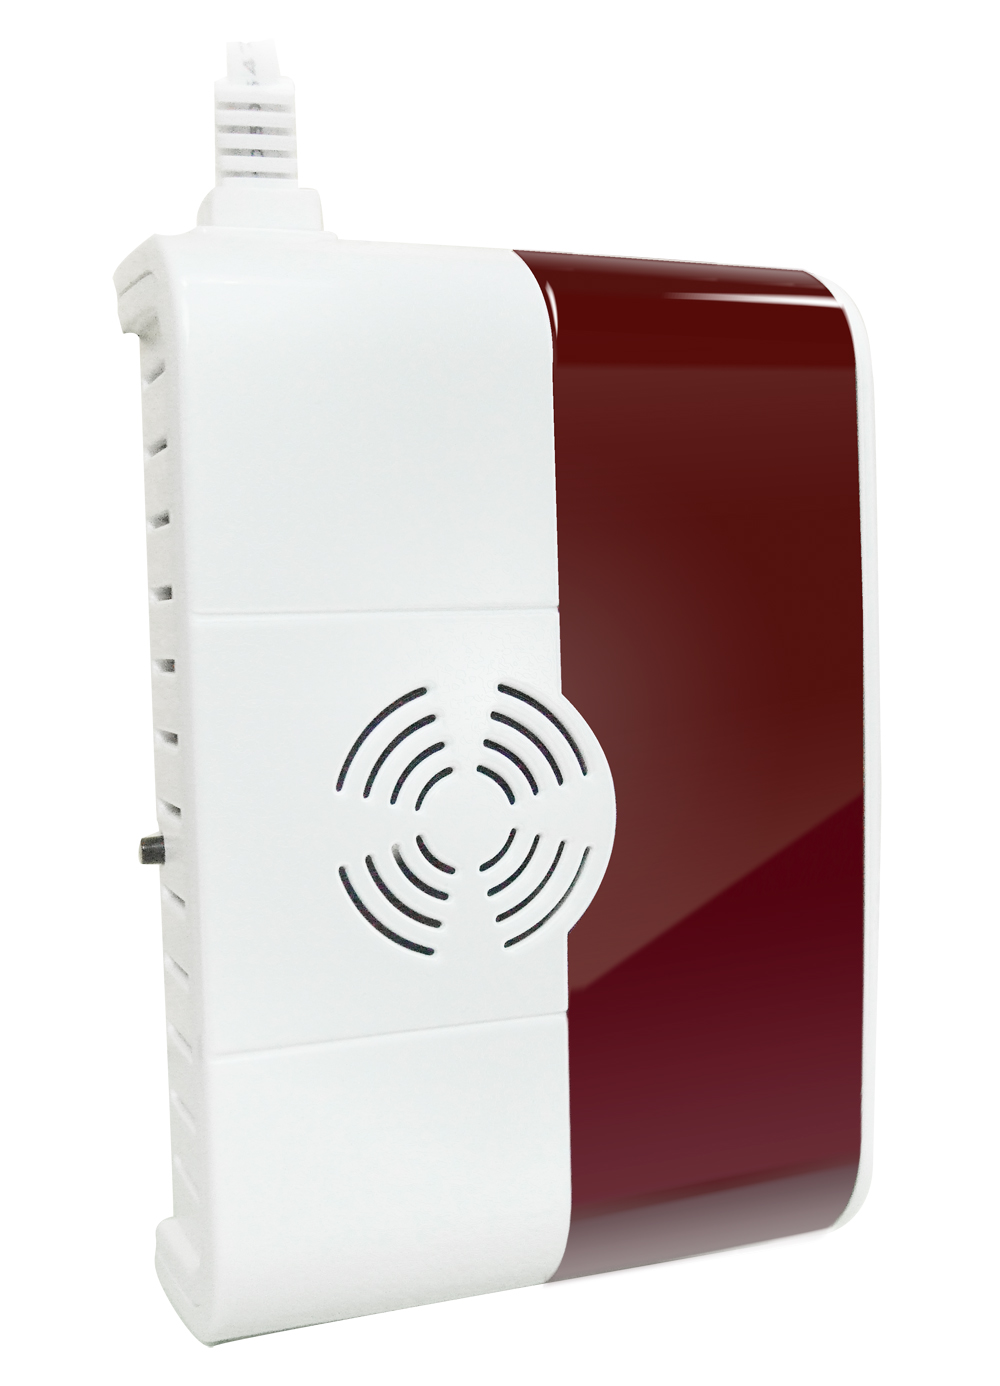 iGet Security P6 bezdrátový detektor plynu